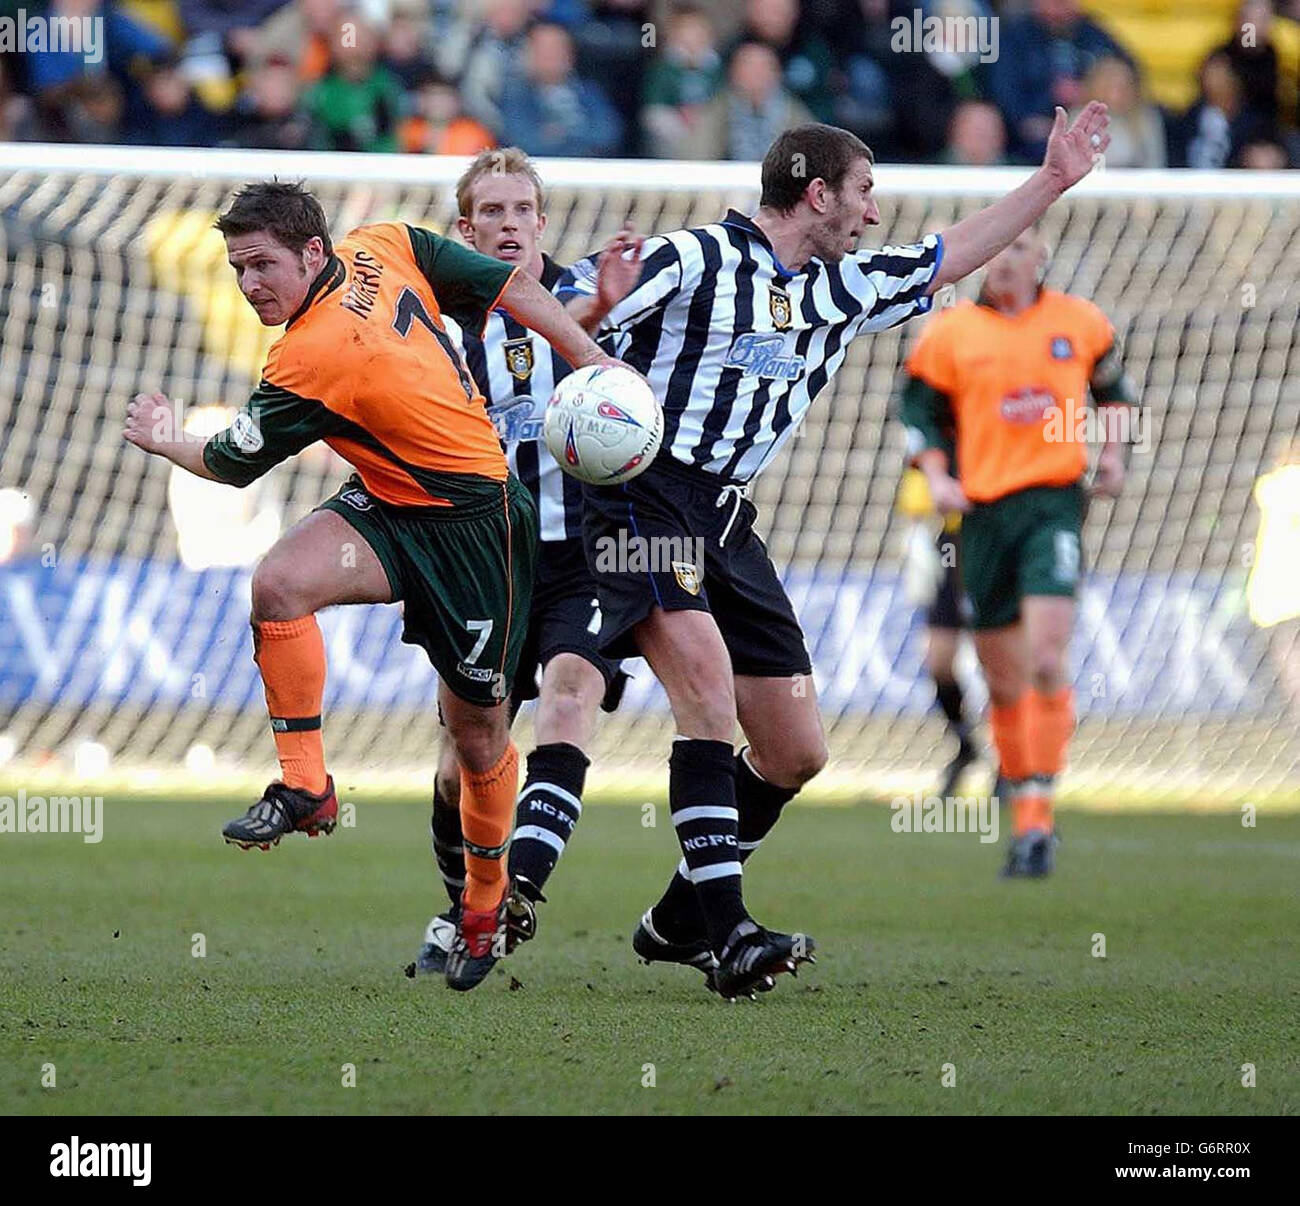 David Norris von Plymouth bekämpft Tony Barras von Notts County während des zweiten Spiels der Nationwide Division am County Ground, Nottingham, am Samstag, den 6. März 2004. KEINE INOFFIZIELLE NUTZUNG DER CLUB-WEBSITE. Stockfoto